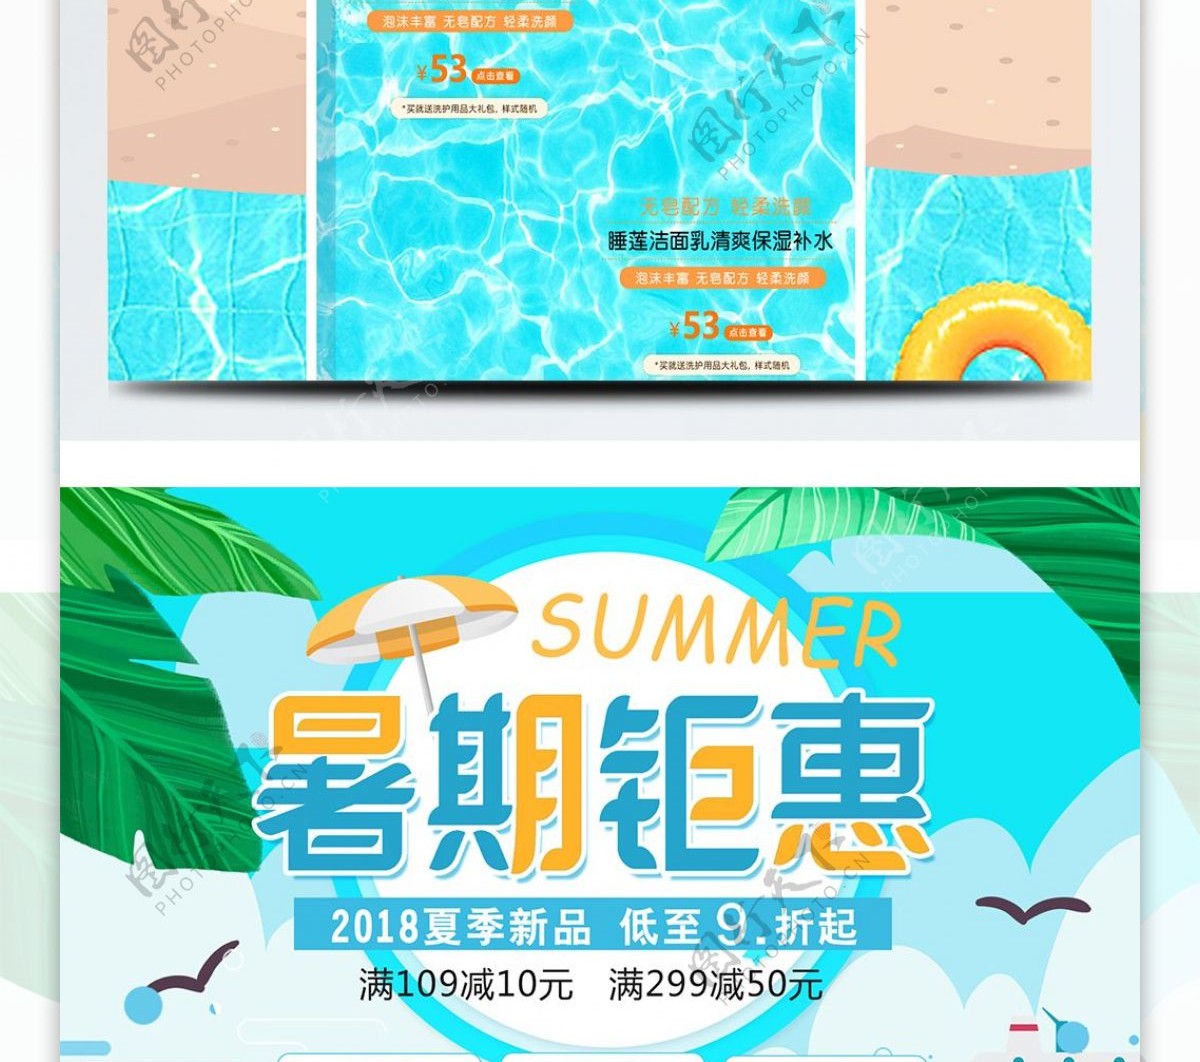 清新夏季夏日暑假暑期钜惠淘宝首页